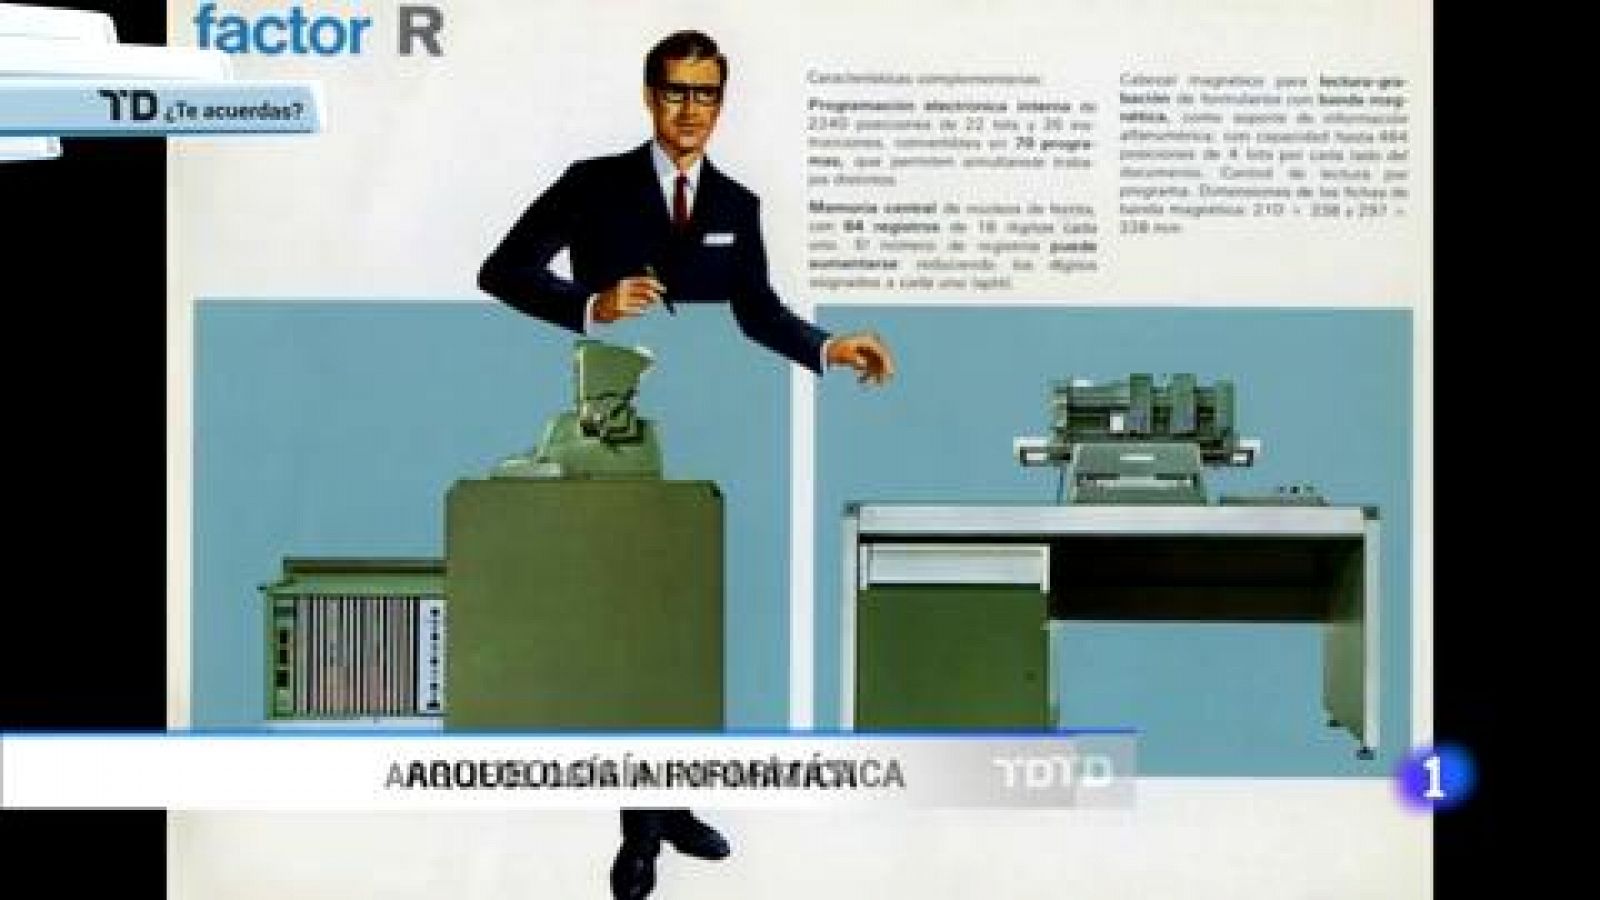 ¿Te acuerdas? - La informática pionera de Telesincro - RTVE.es